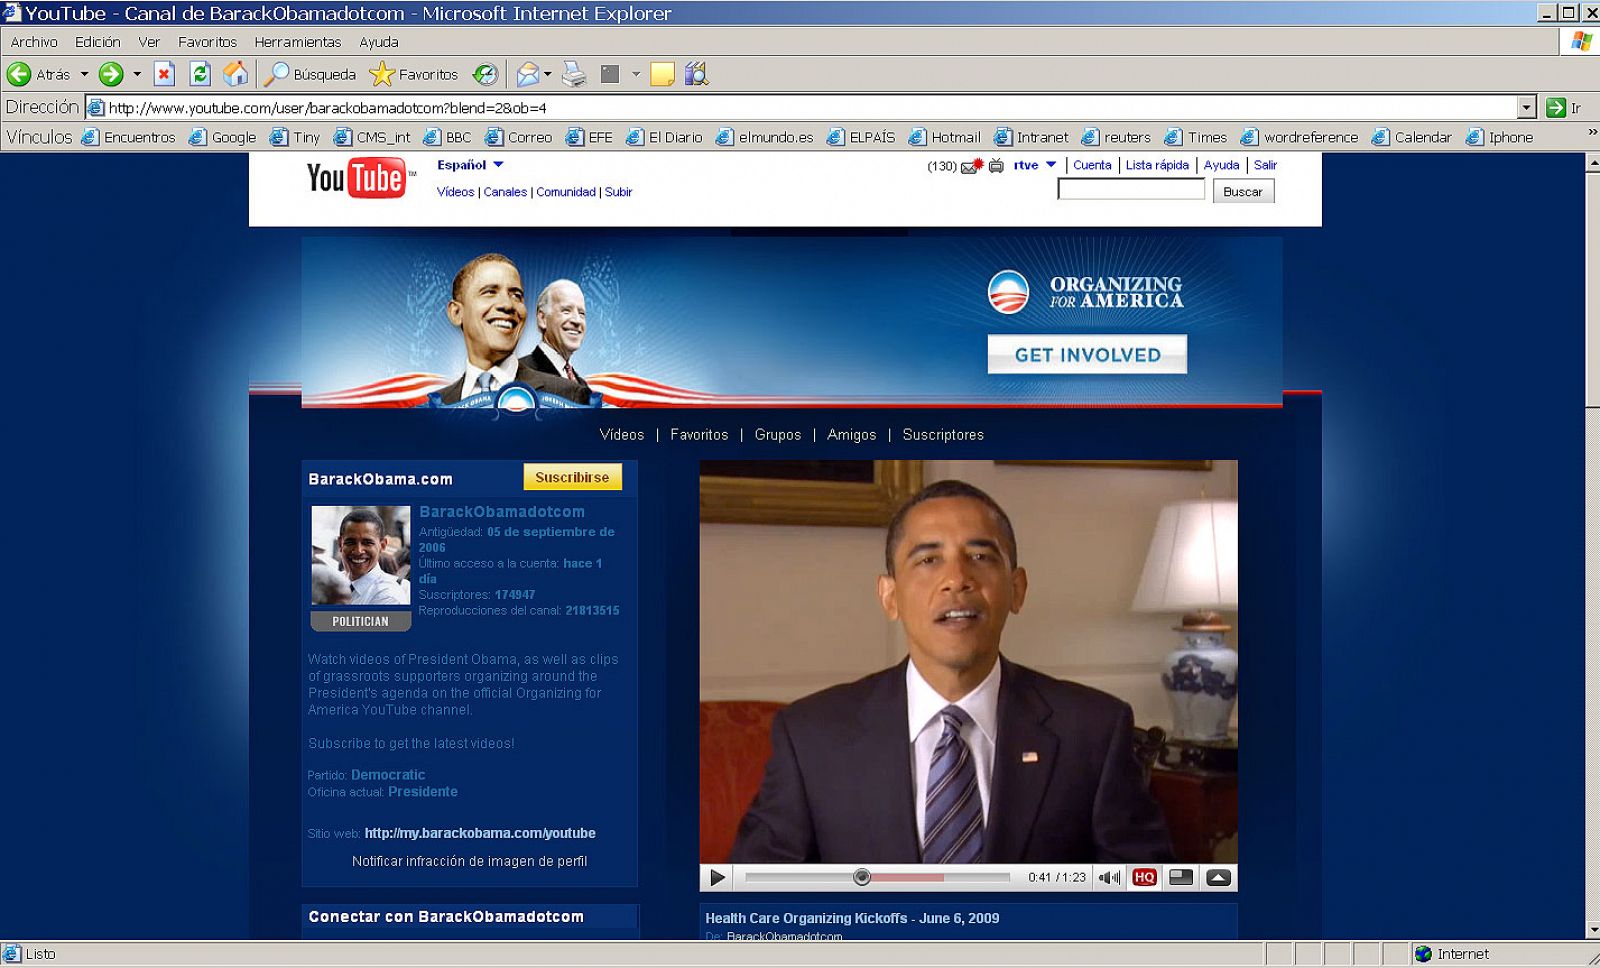 Imagen del canal de Barack Obama en YouTube